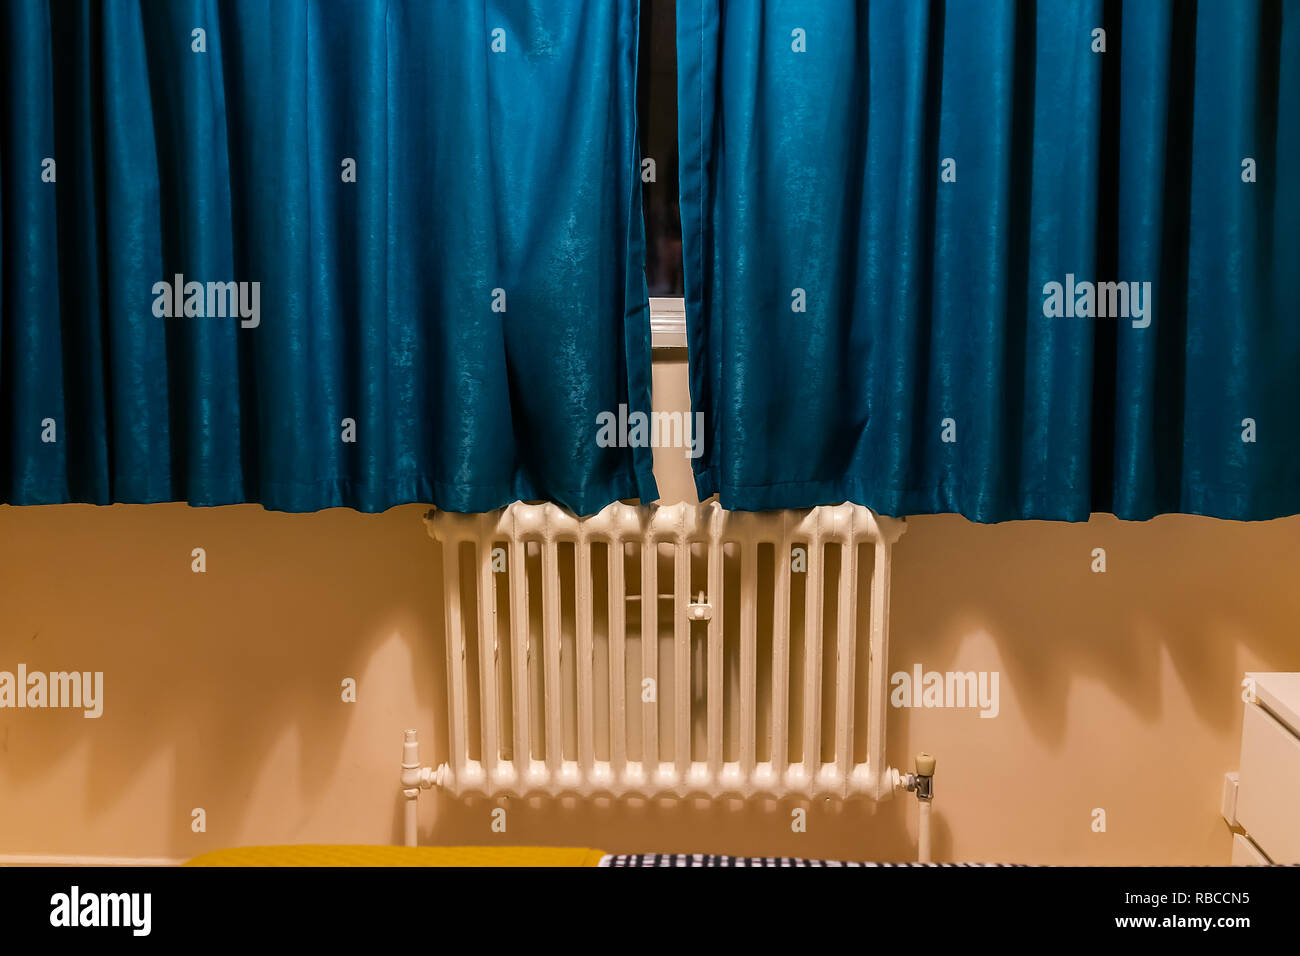 Die dekorativen blauen Vorhang am Abend Nacht, winter Wärmestrahler in  London Schlafzimmer Heim, Haus Apartment mit dunklen Jalousien  Stockfotografie - Alamy